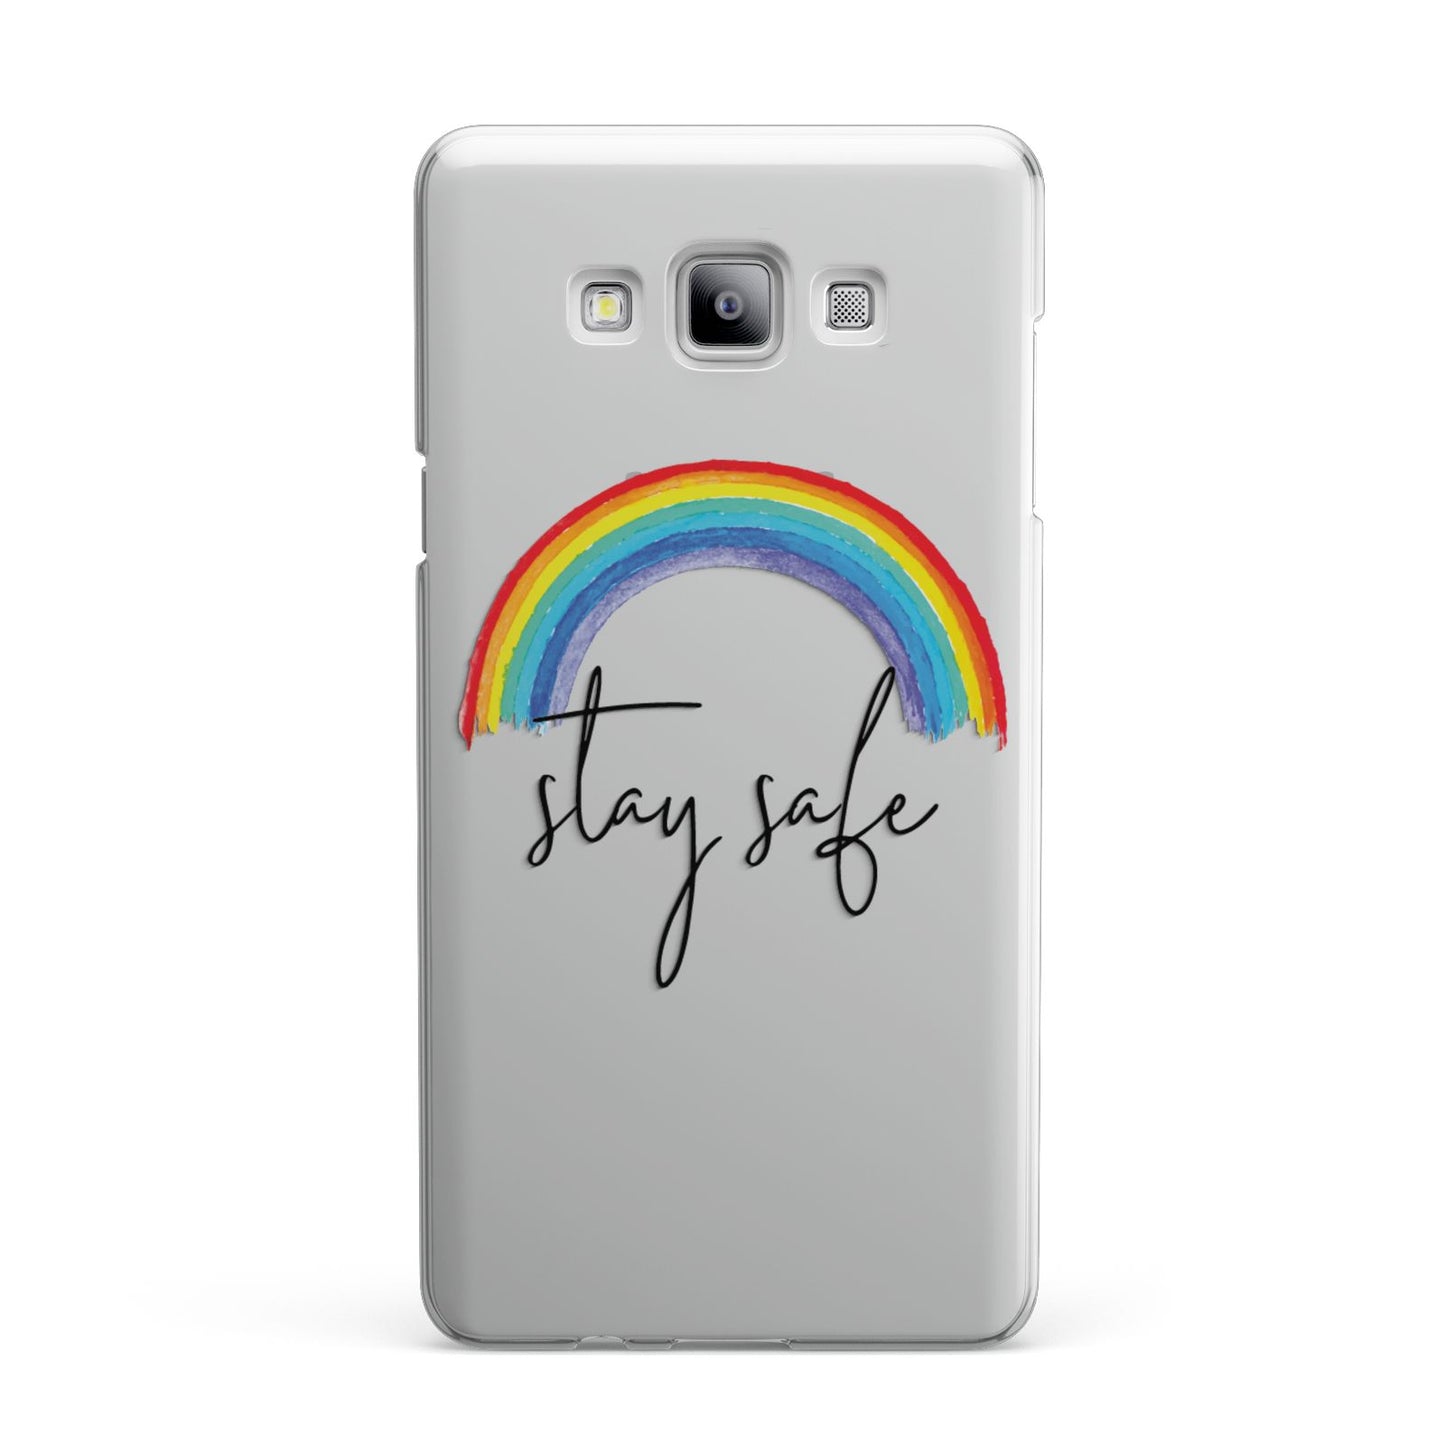 Stay Safe Rainbow Samsung Galaxy A7 2015 Case